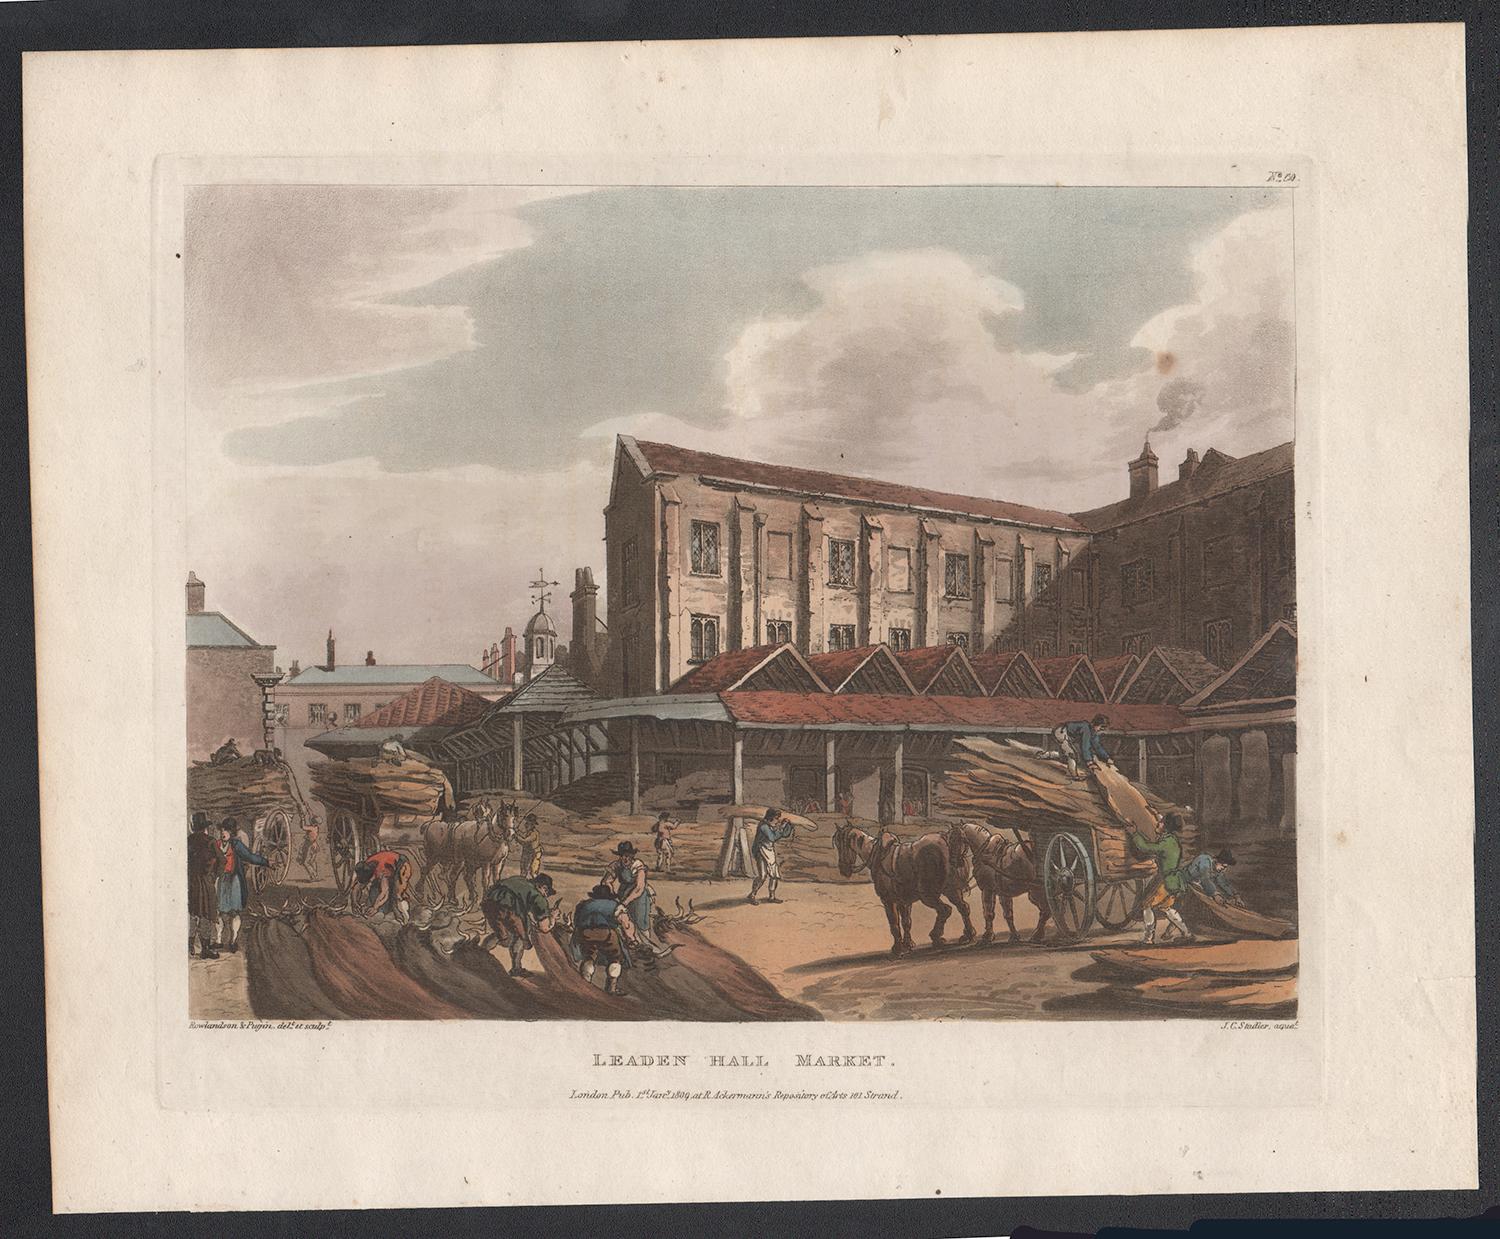 Aquatinte de couleur du marché de Leaden Hall, Londres, 1809, d'après Thomas Rowlandson - Print de Unknown